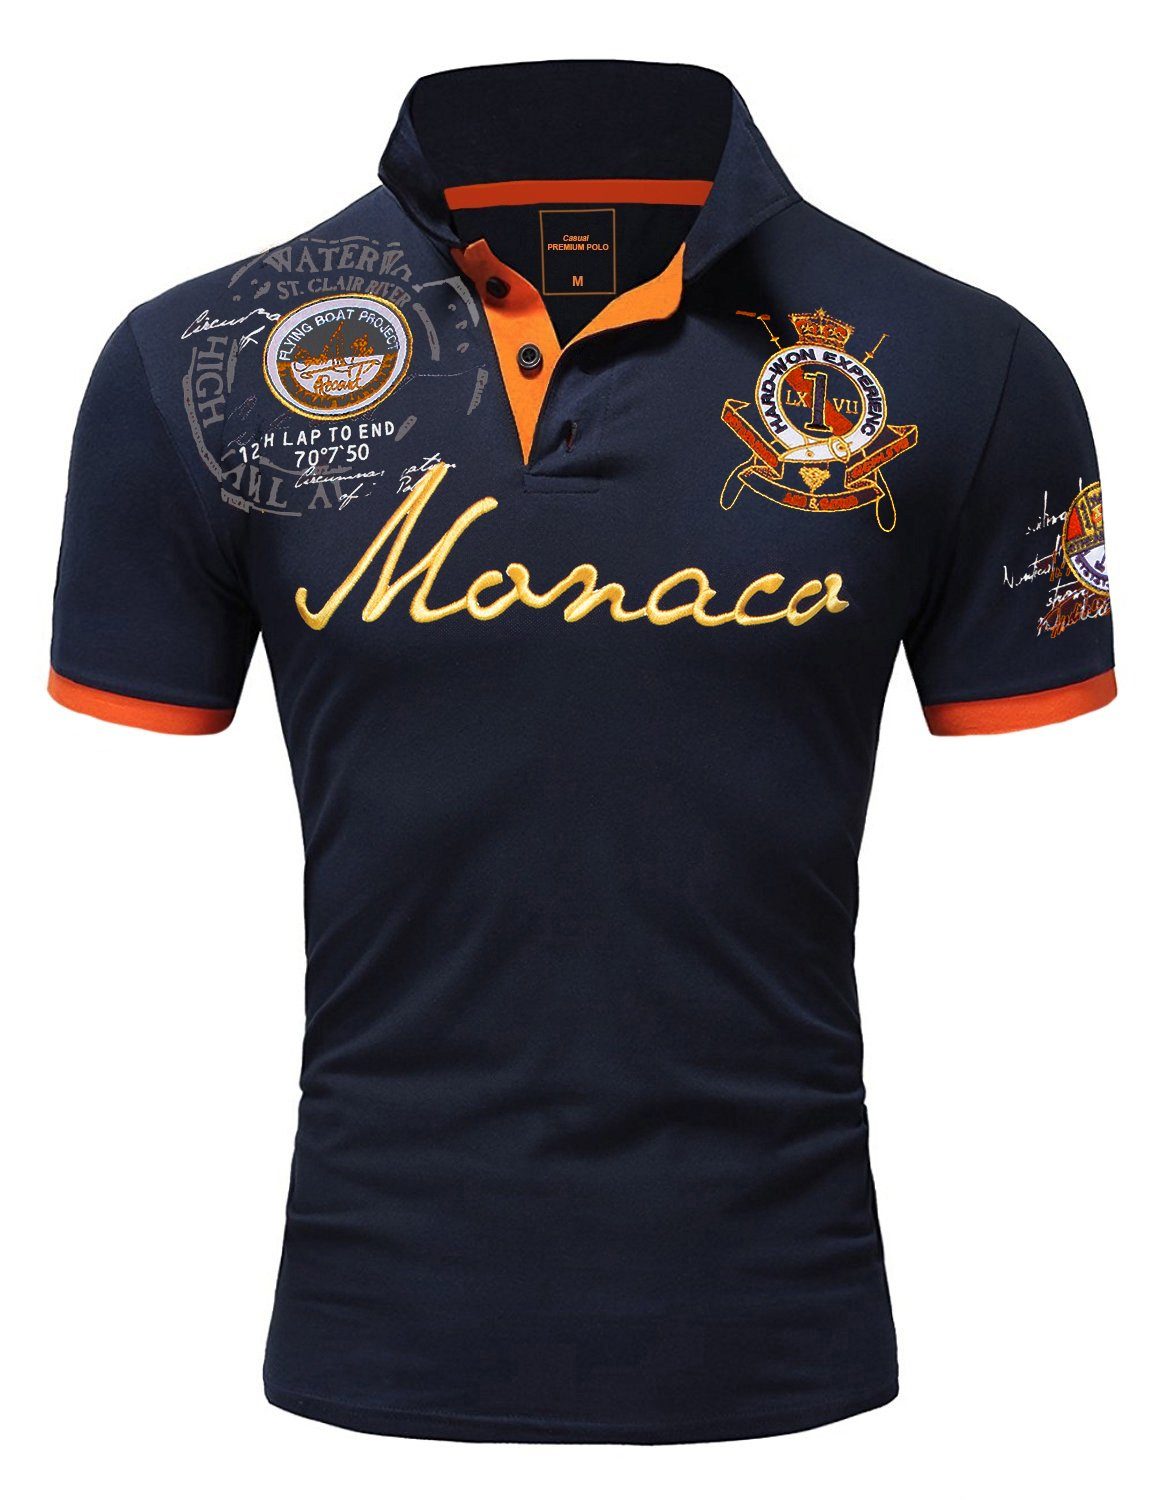 Amaci&Sons Poloshirt Monaco 2.0 Poloshirt mit Stickerei Herren Basic Kontrast Monaco Stickerei Kurzarm Polohemd T-Shirt Navyblau